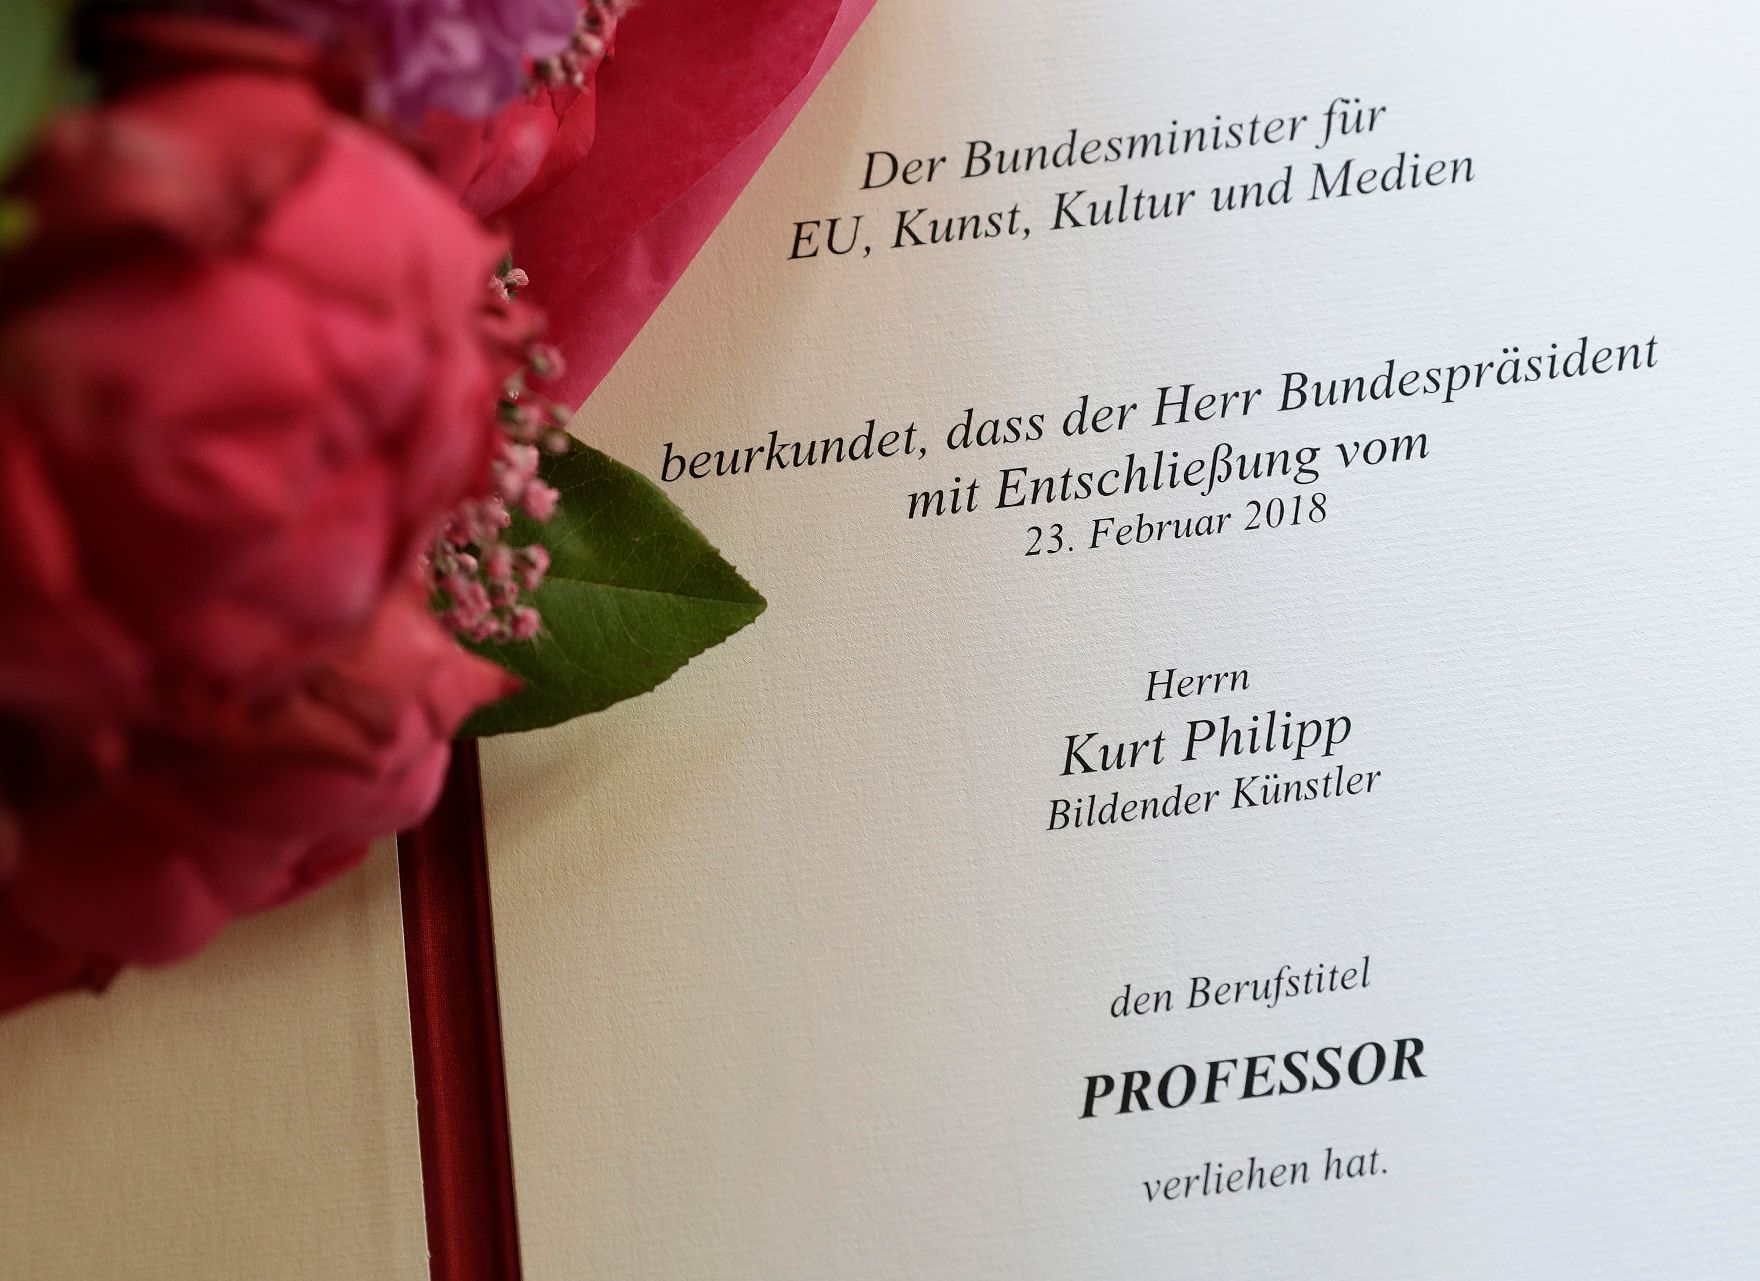 Am 4. Juli 2018 wurden die Urkunde über die Verleihung des Berufstitels Professor an Kurt Philipp und das Große Ehrenzeichen für Verdienste um die Republik Österreich an Franz Basdera überreicht.